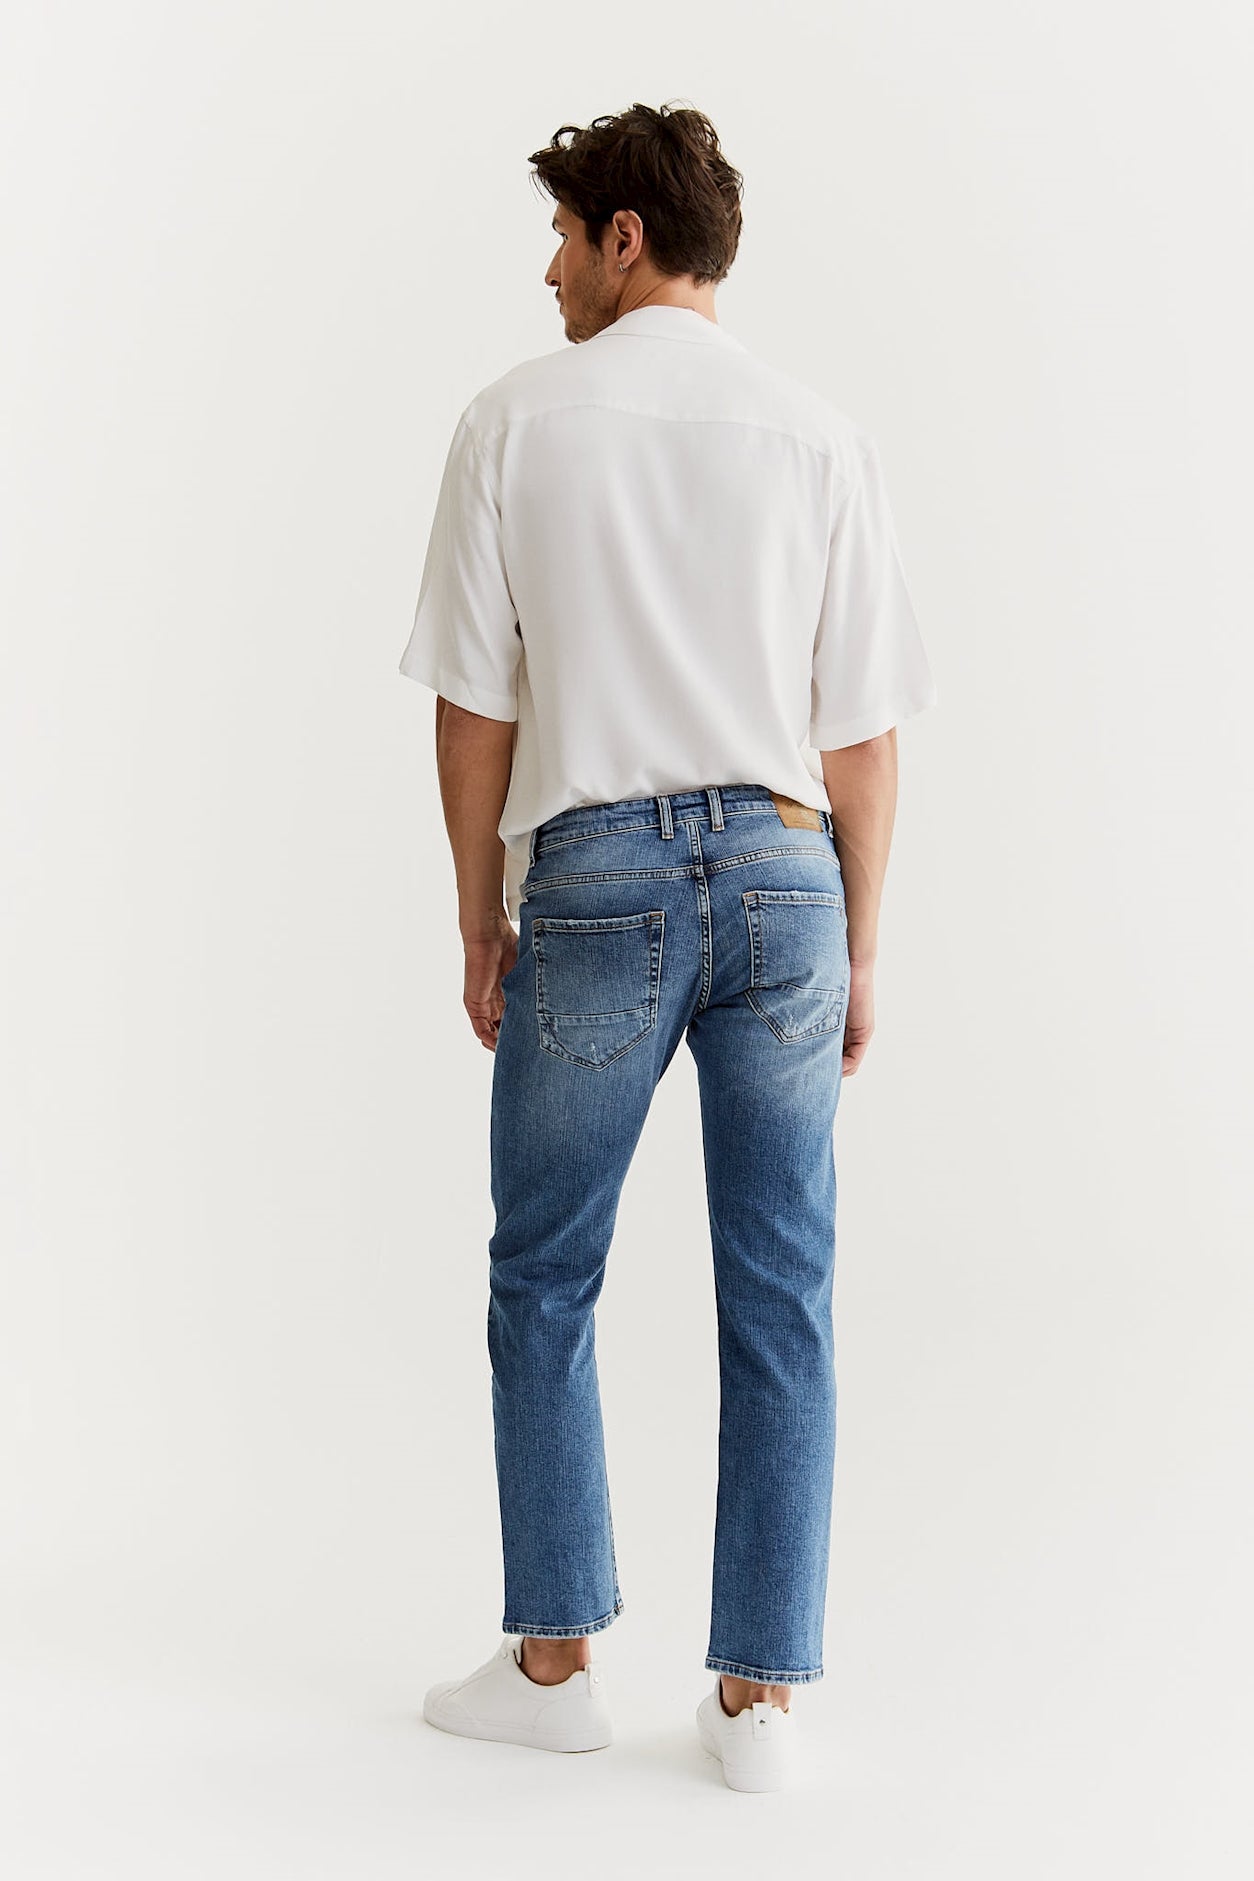 Marc - Straight Tapered Jeans - Hellblau